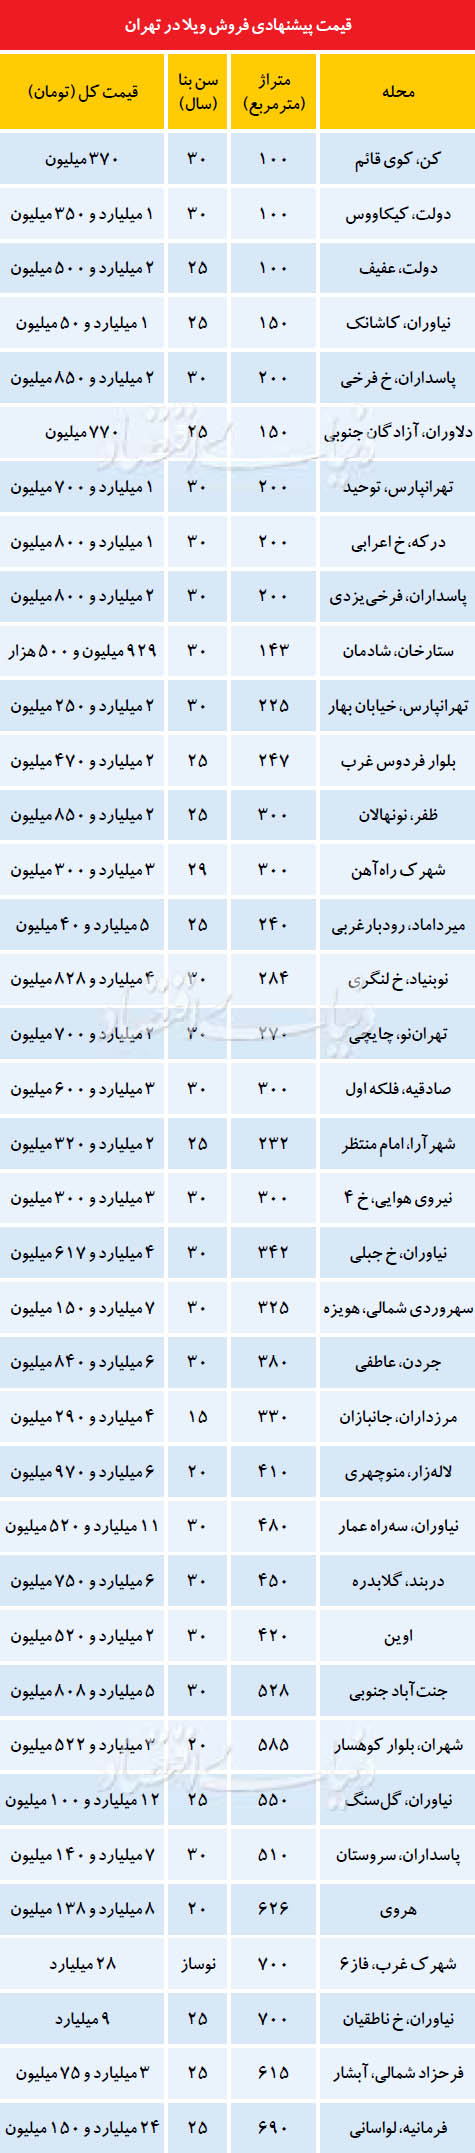 قیمت پیشنهادی فروش ویلا در تهران